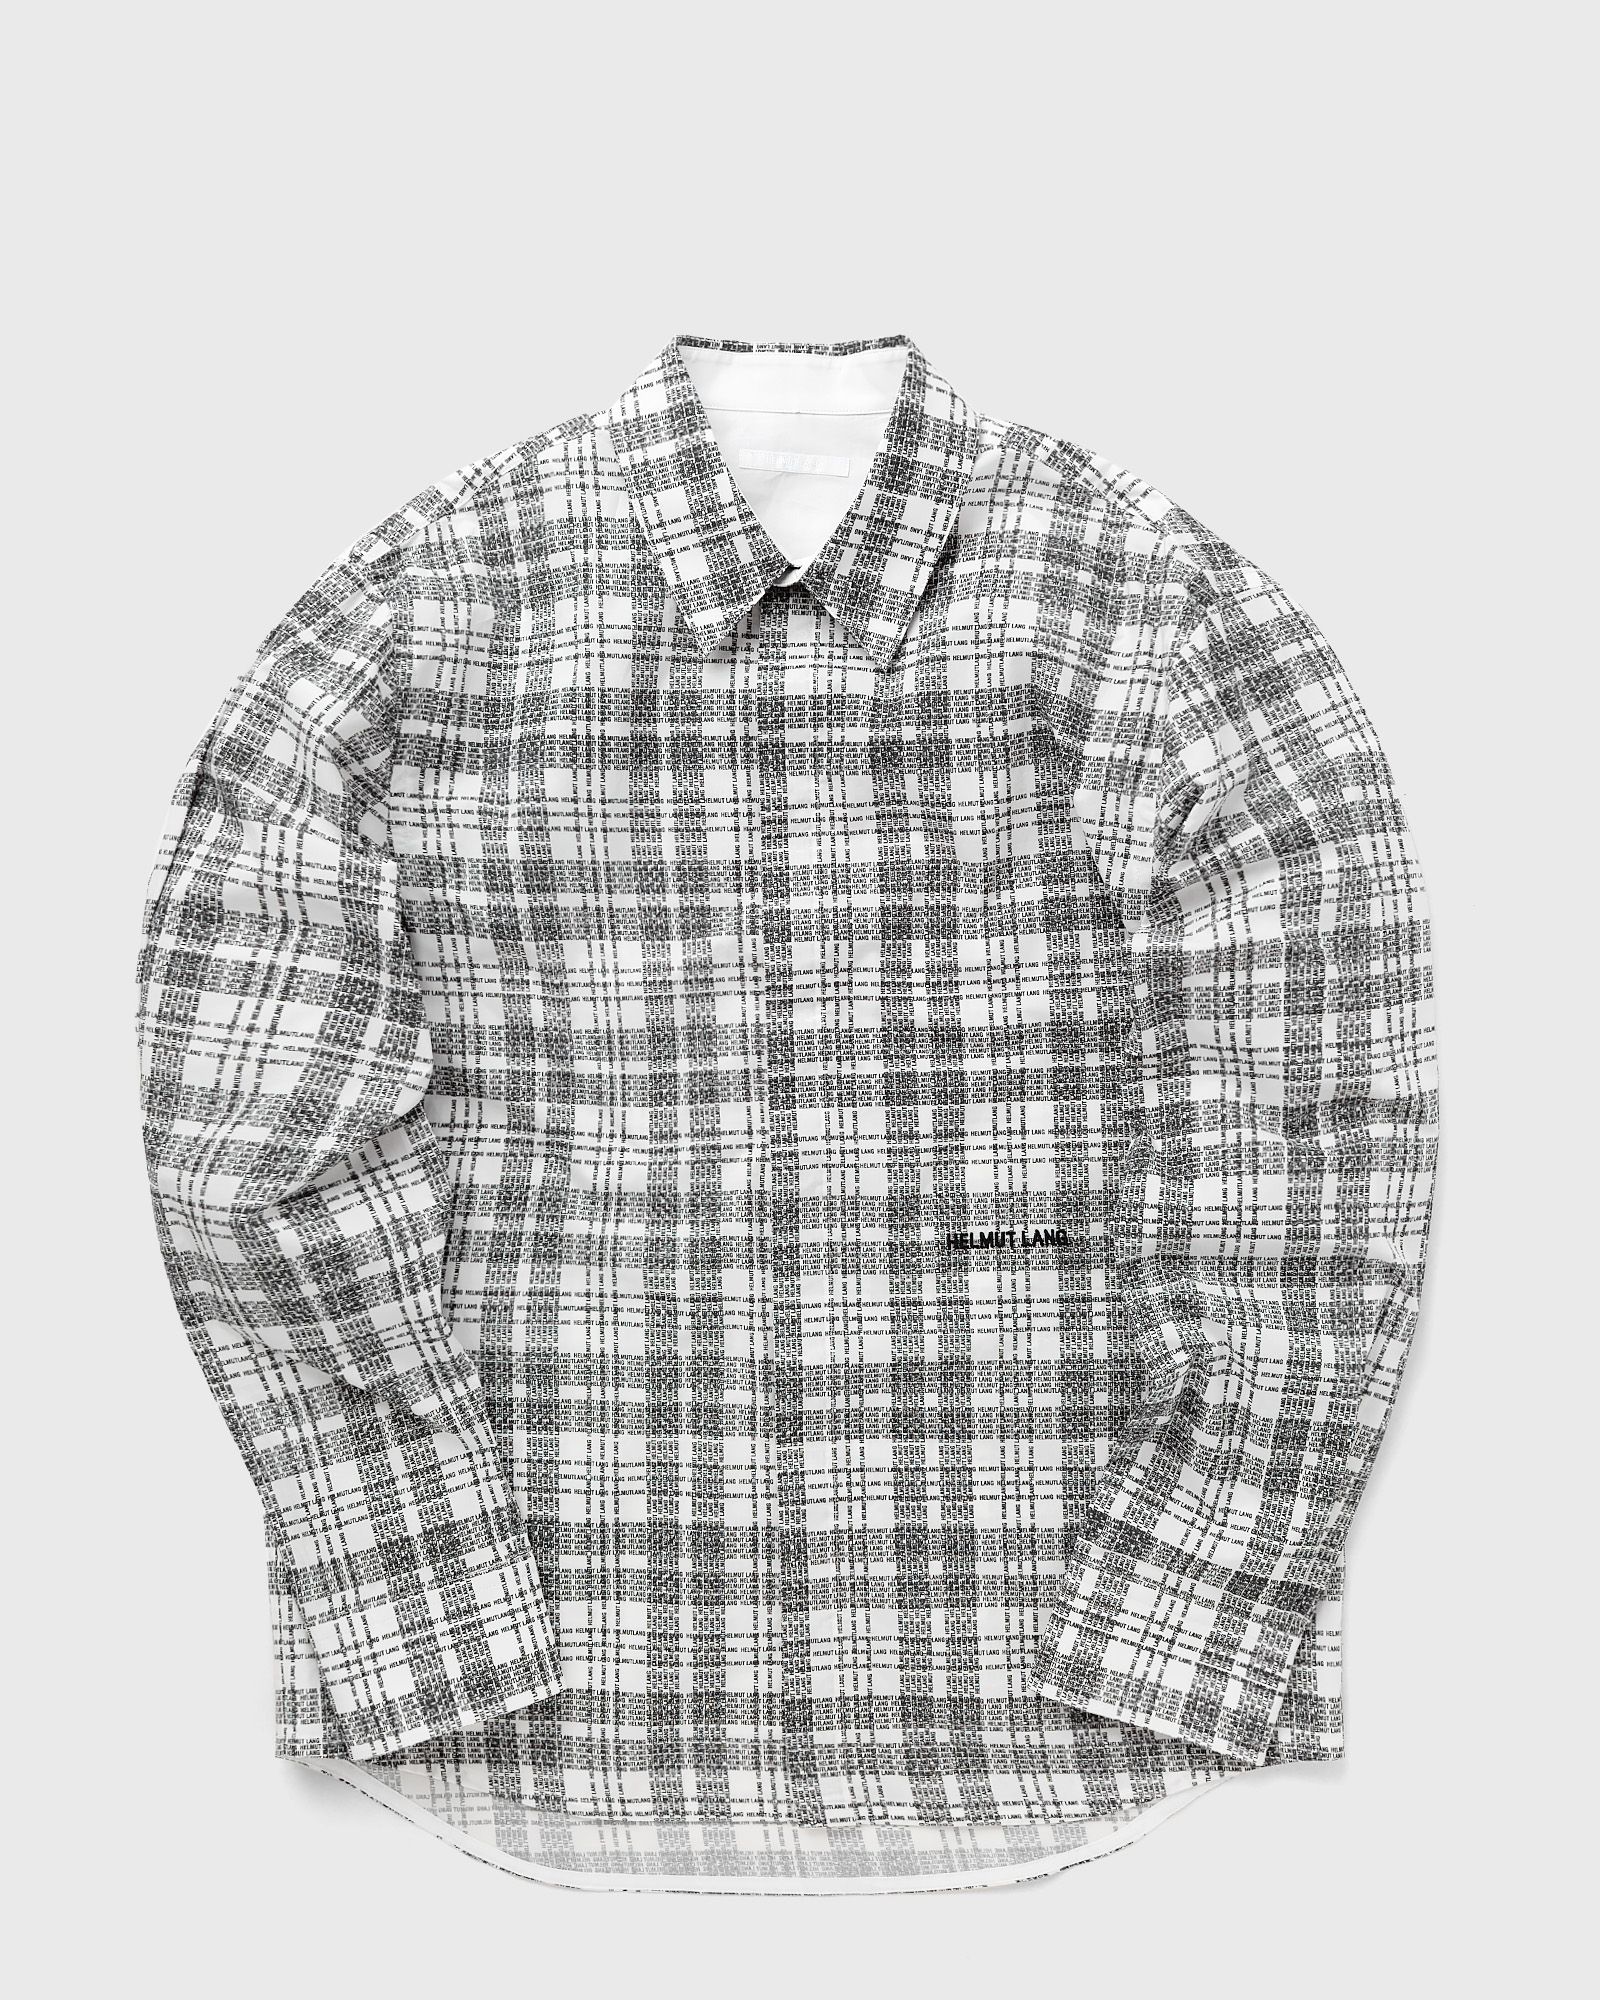 Helmut Lang - printed shirt men longsleeves black|white in größe:m